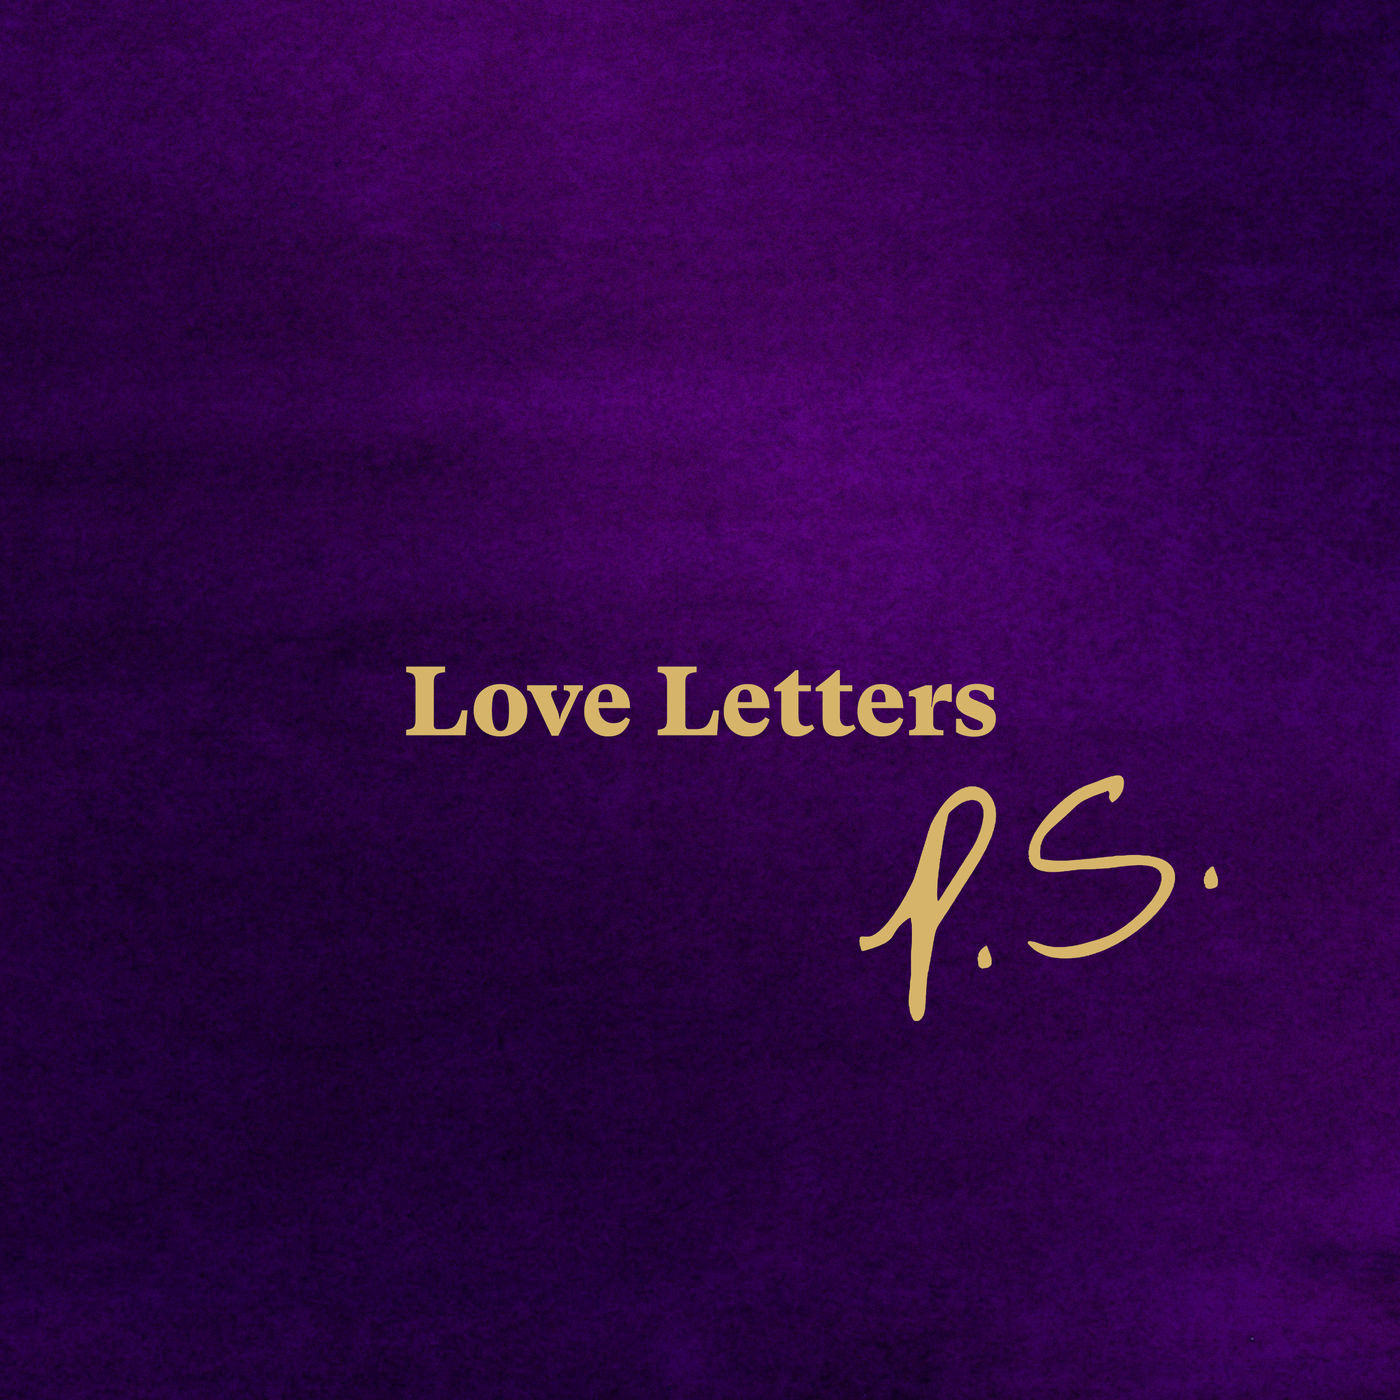 Anoushka Shankar - Love Letters P.S (Deluxe) (2021) [FLAC 24bit/48kHz]